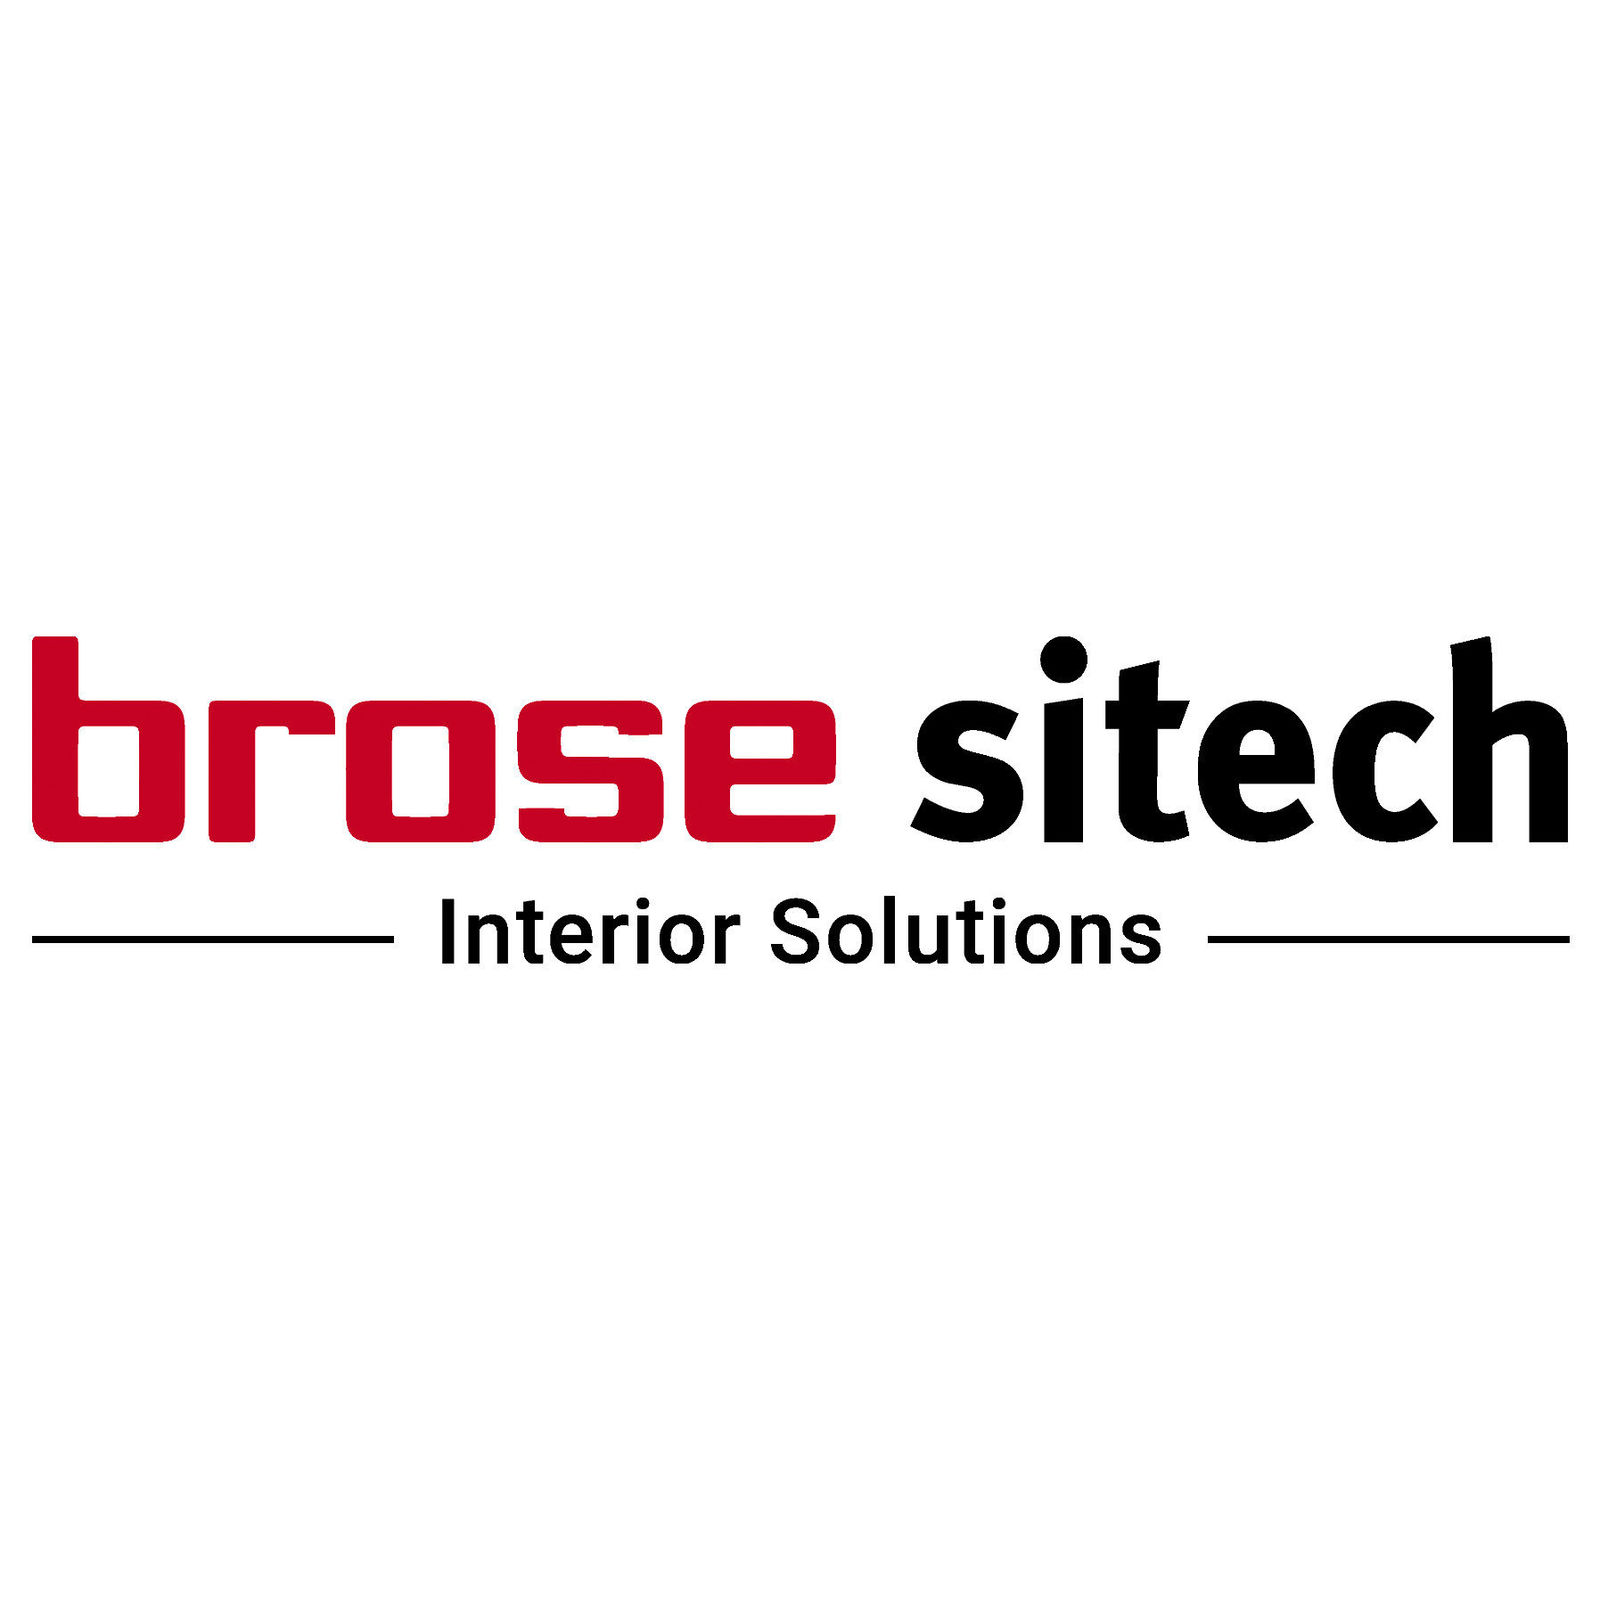 Brose und Volkswagen starten Gemeinschaftsunternehmen Brose Sitech für Sitzsysteme